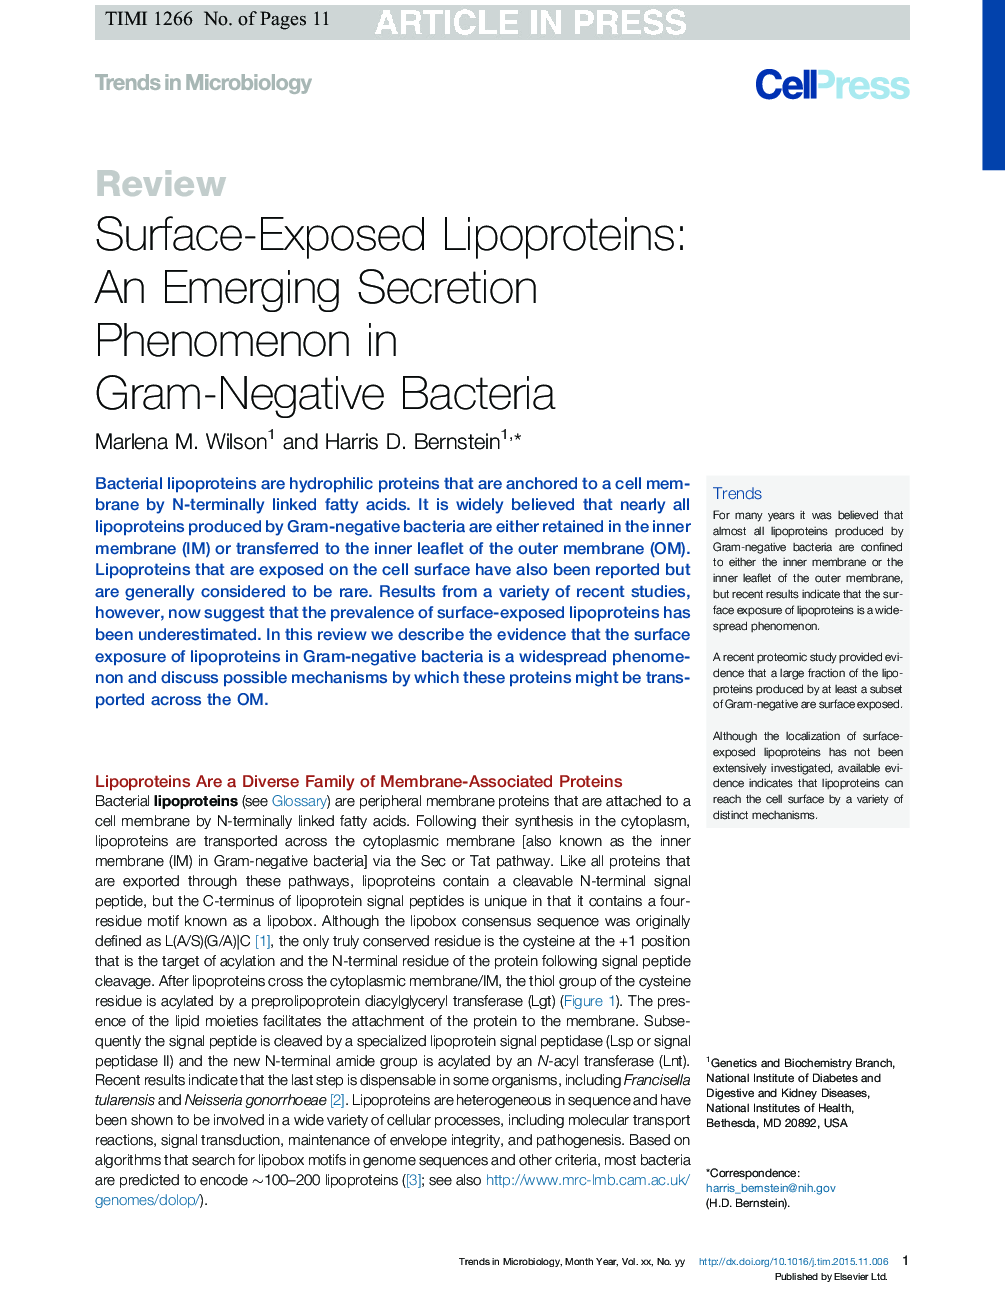 لیپوپروتئین های سطحی در معرض سطوح: یک پدیده تشدید تظاهرات در باکتریهای گرم منفی 